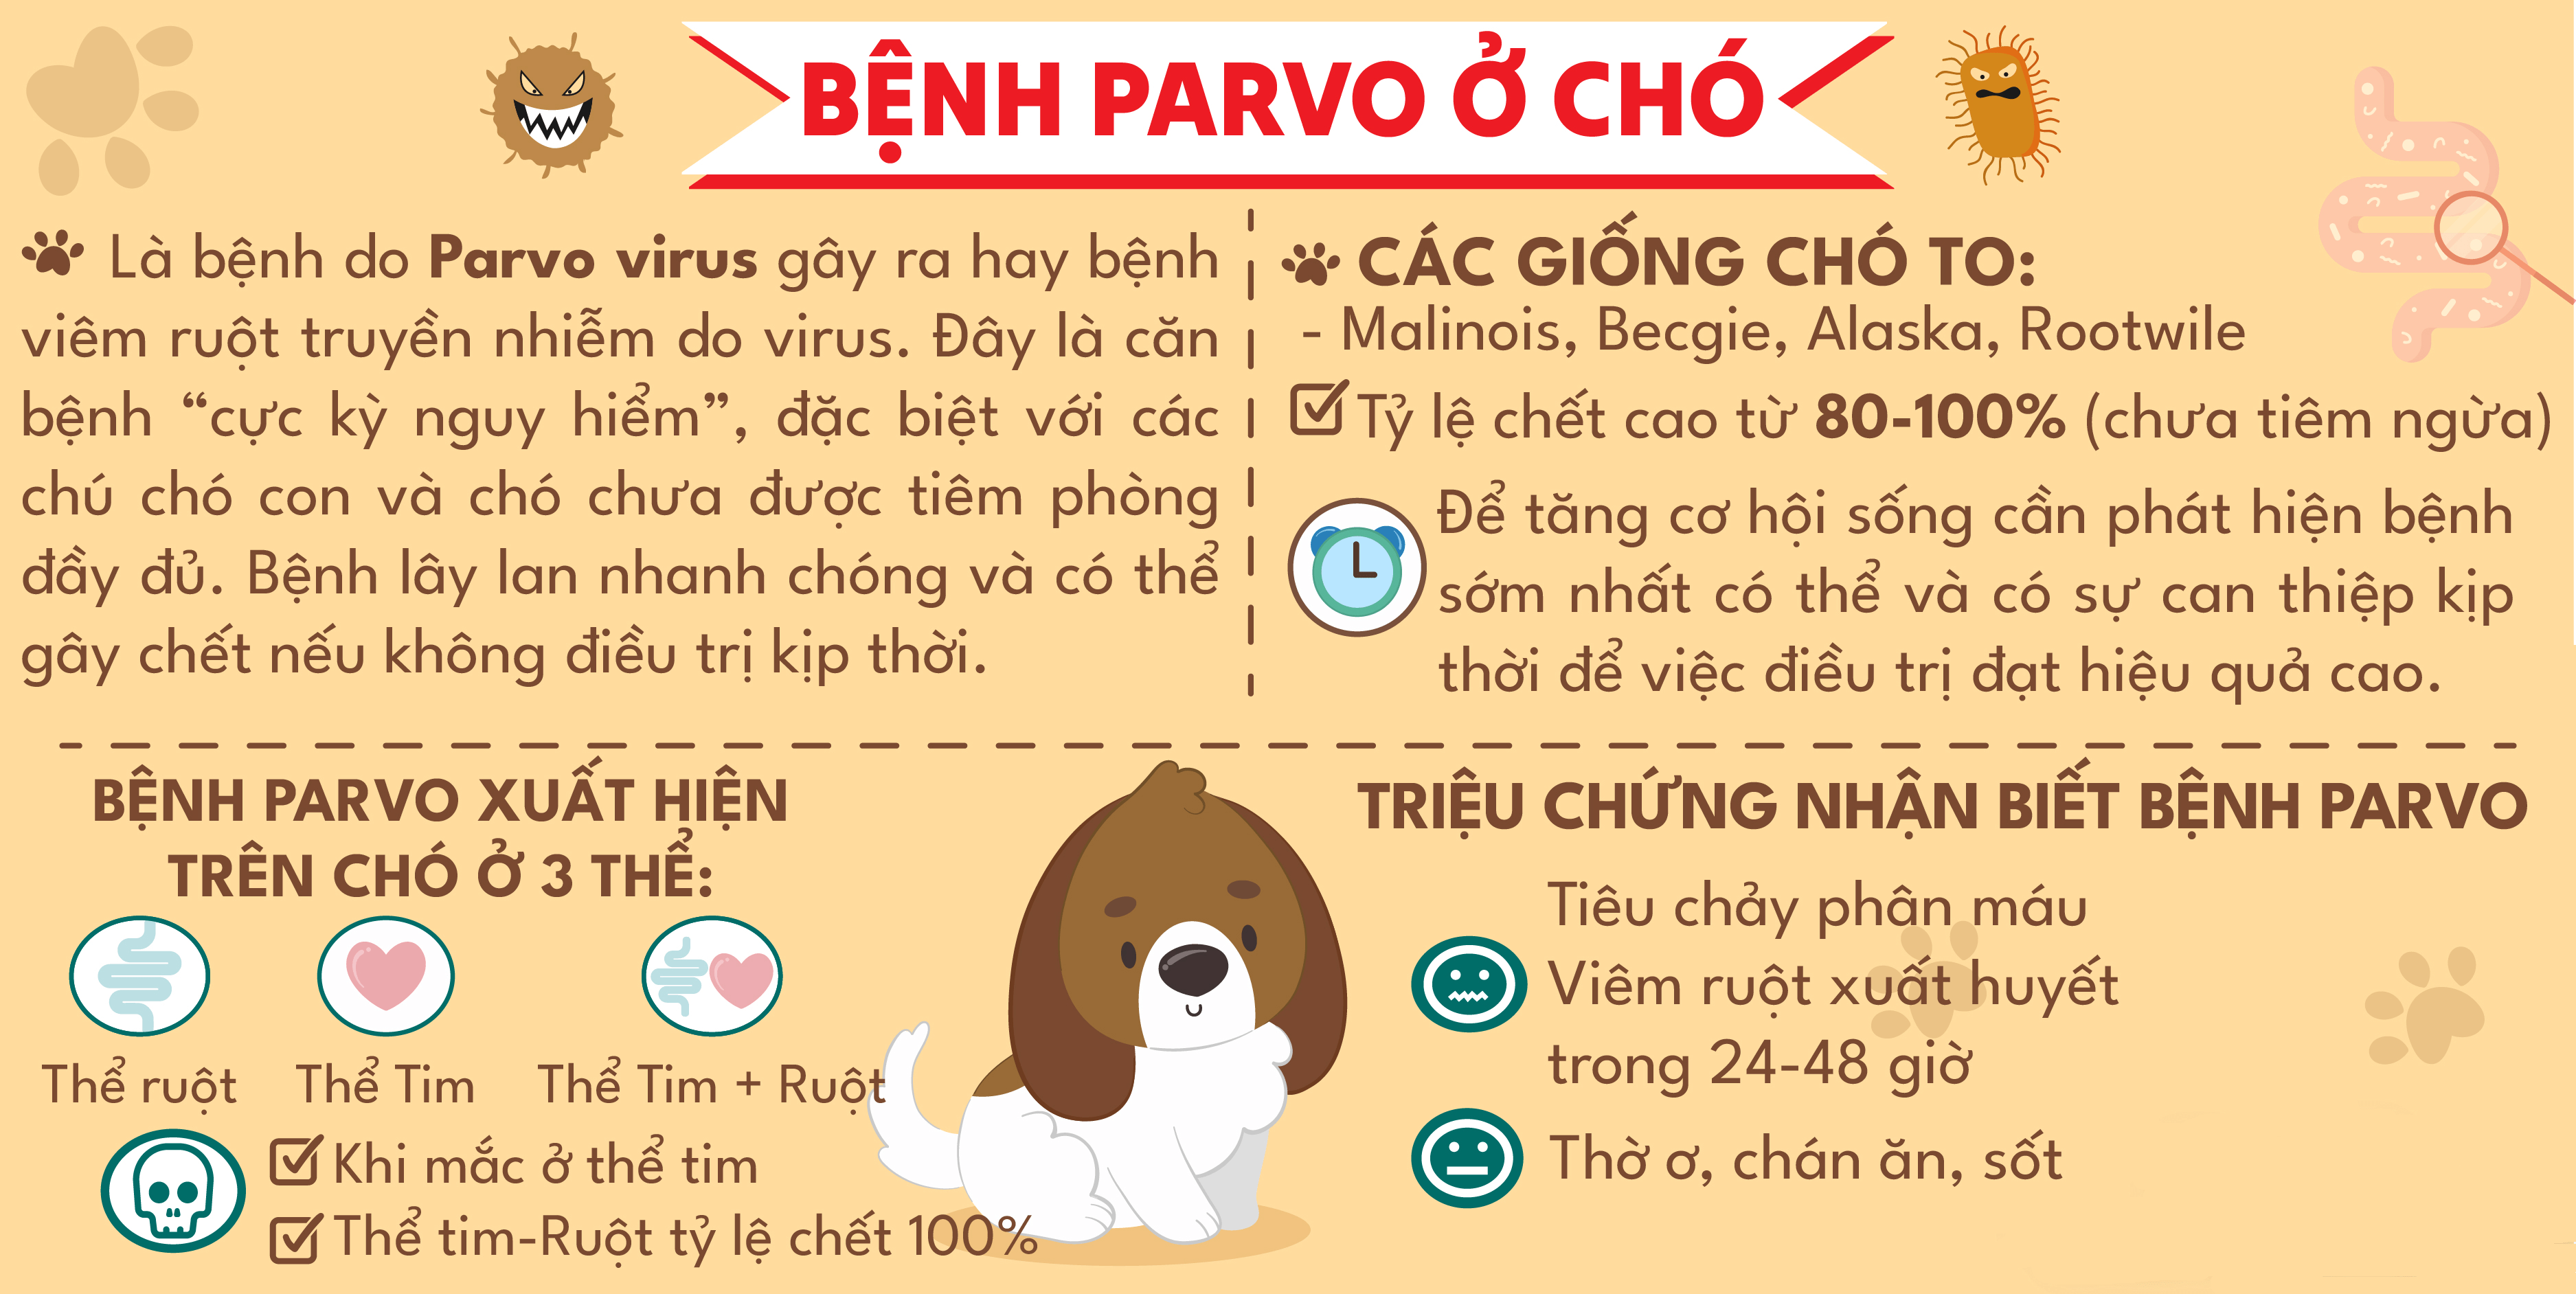 Bẳng tóm tắt về bệnh Parvo ở chó